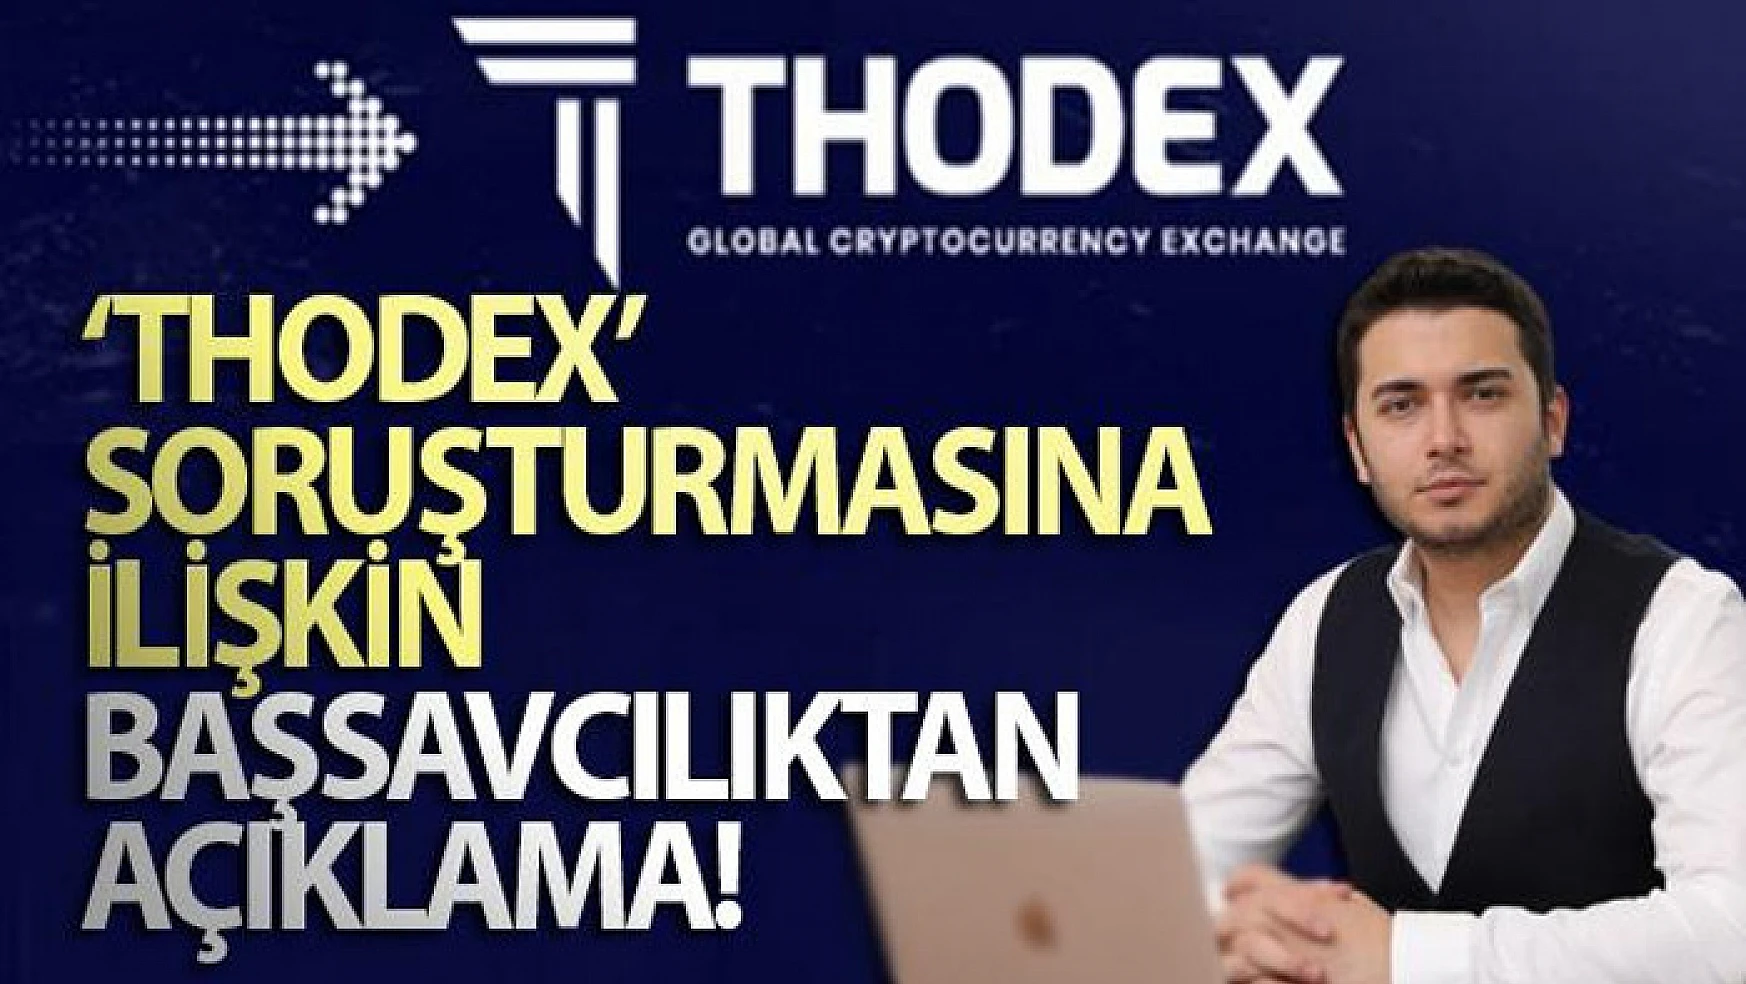 'Thodex' soruşturmasına ilişkin Başsavcılıktan açıklama